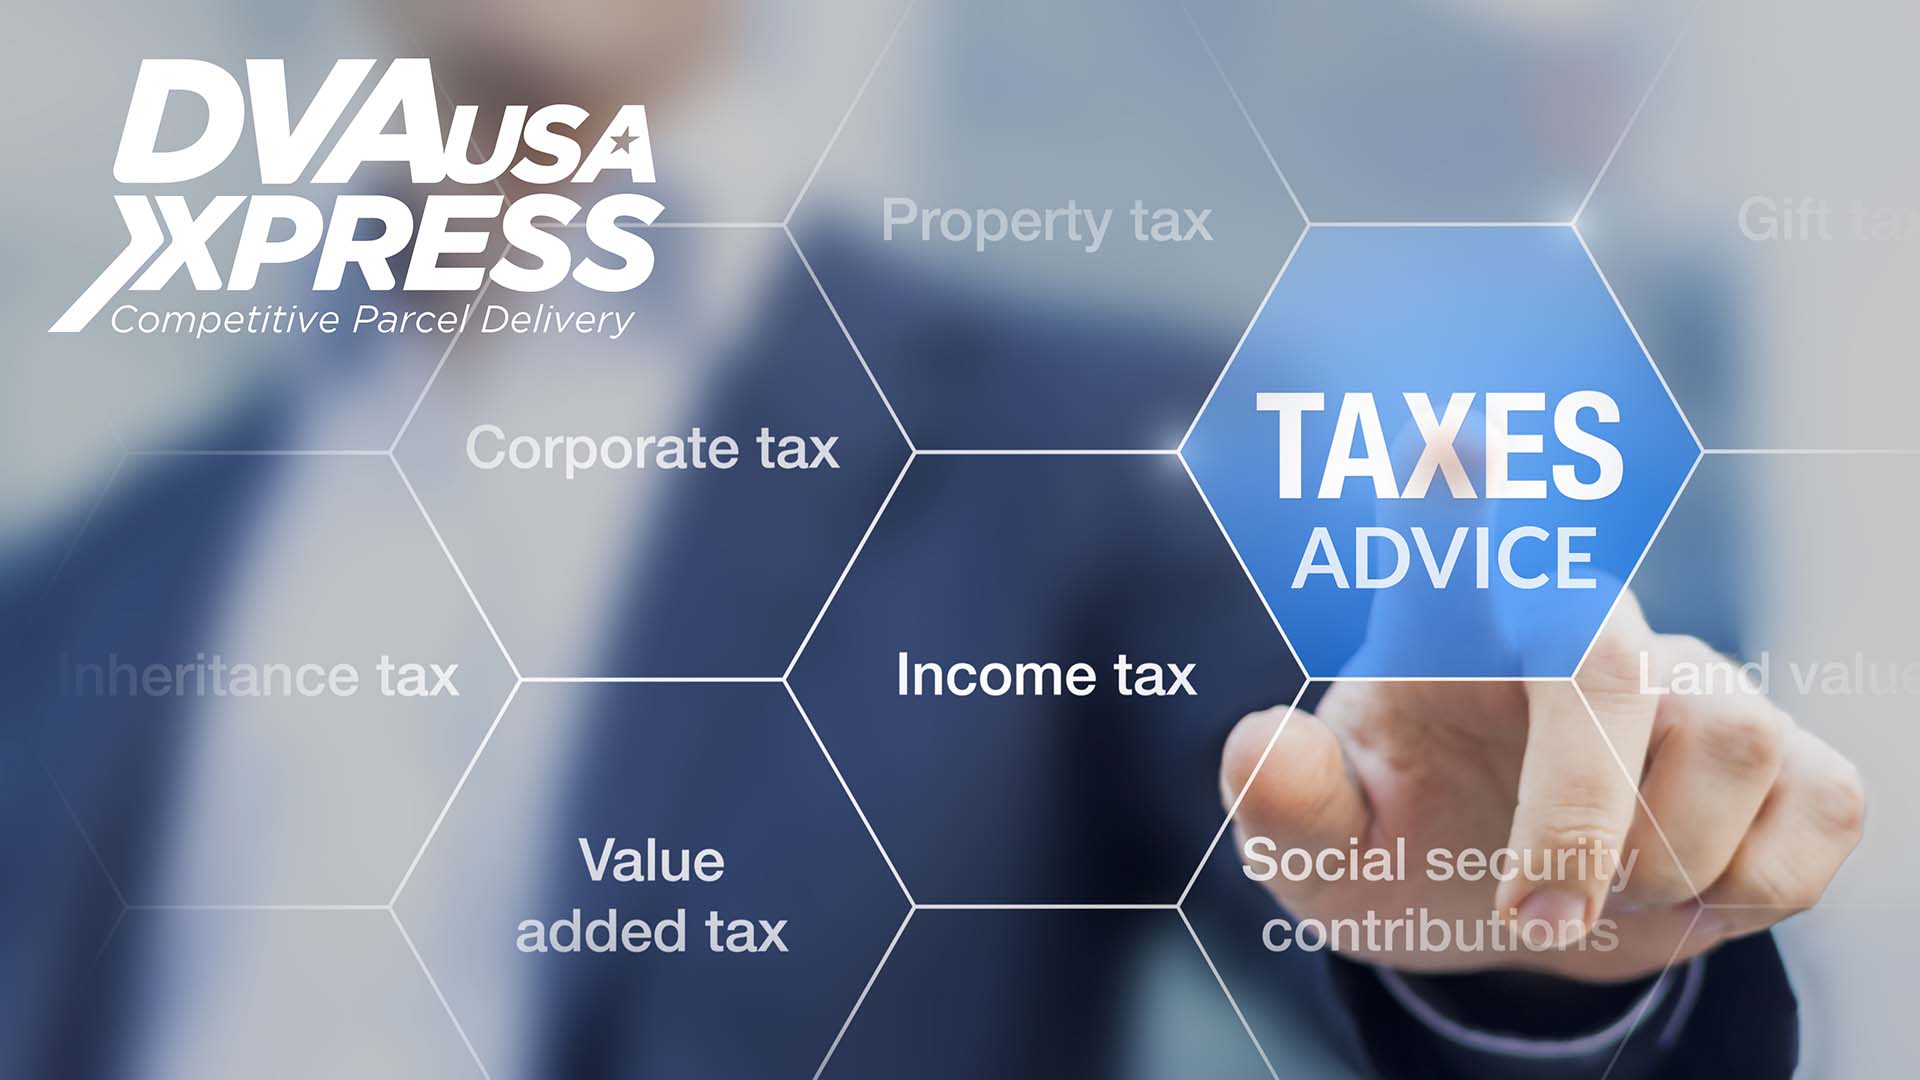 Taxes Advice